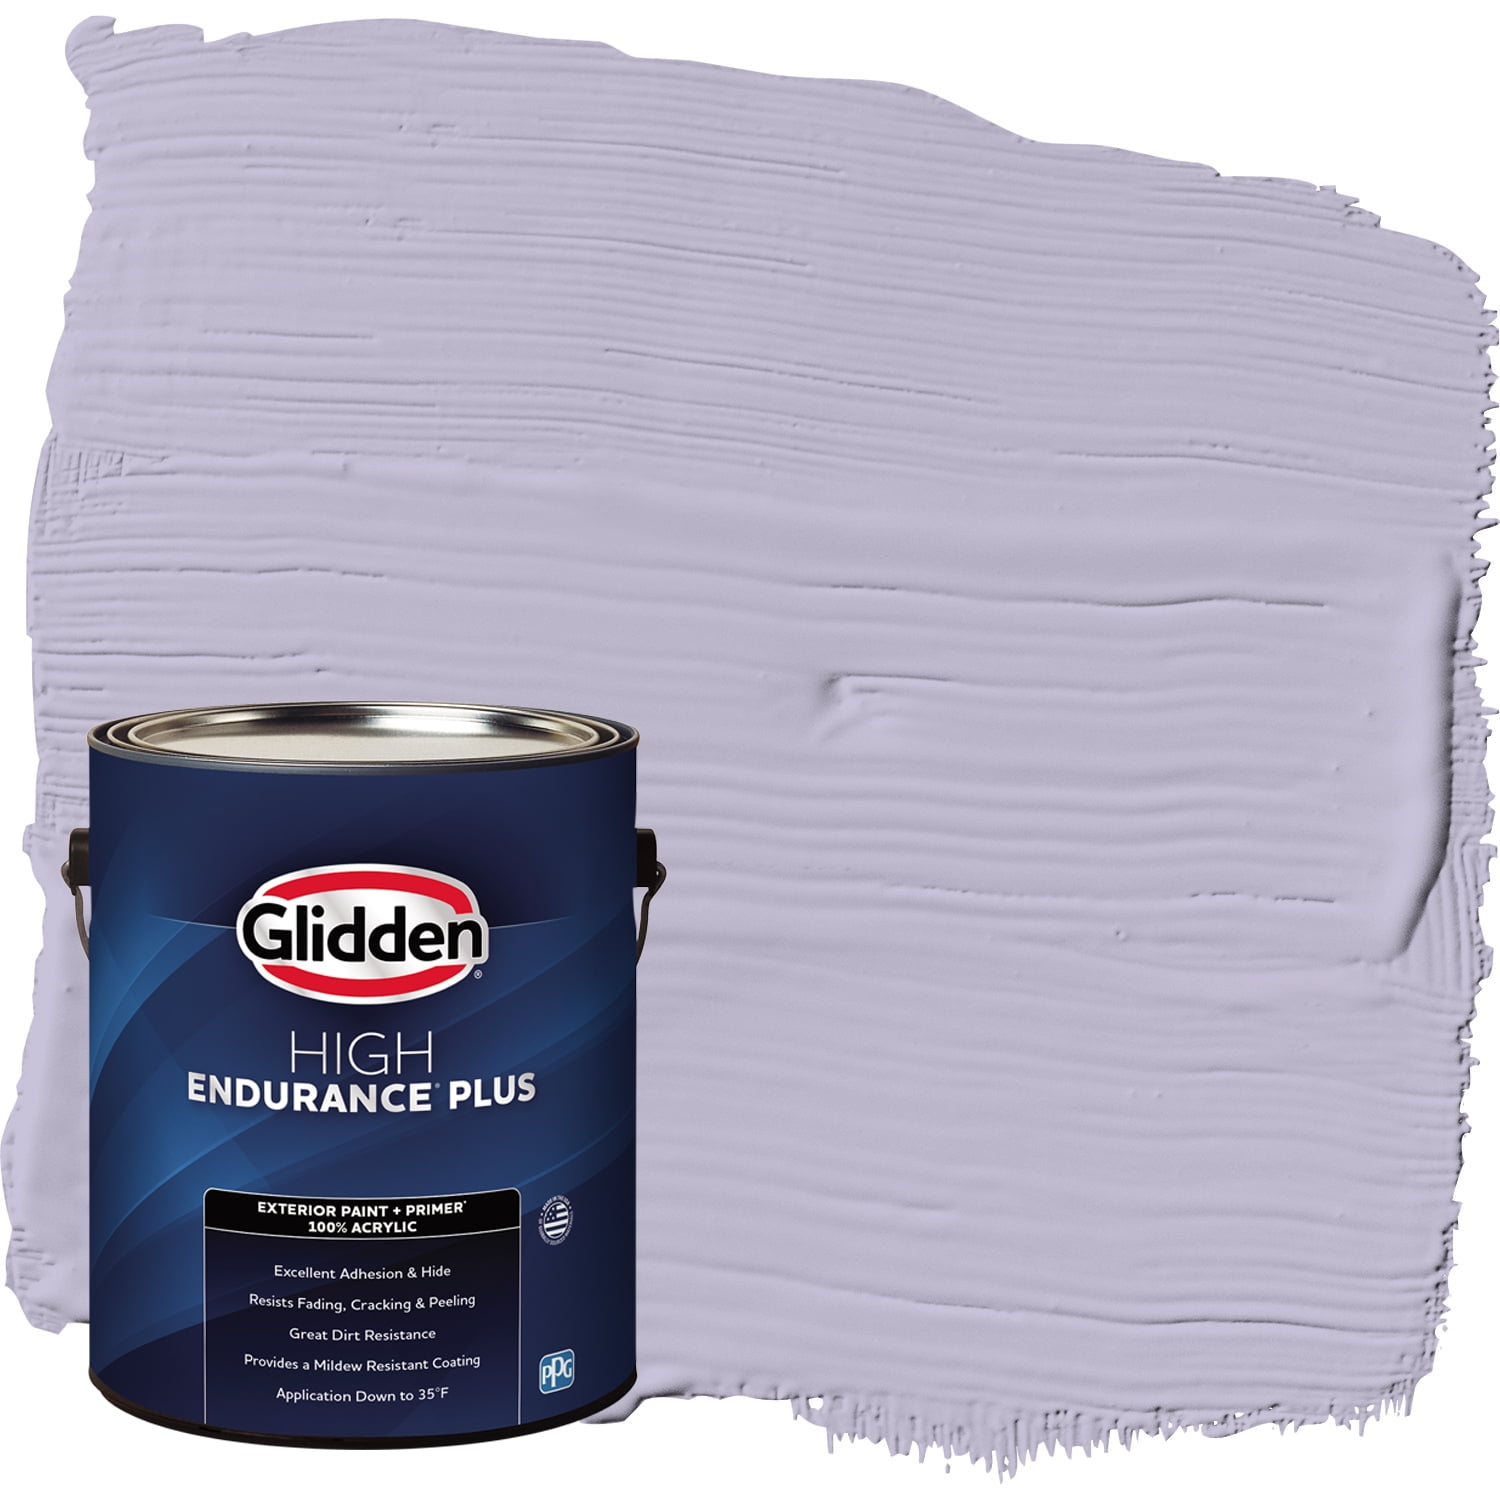 Krylon COLORmaxx Paint + Primer Spray Paint, Matte, Soft Lilac, 12